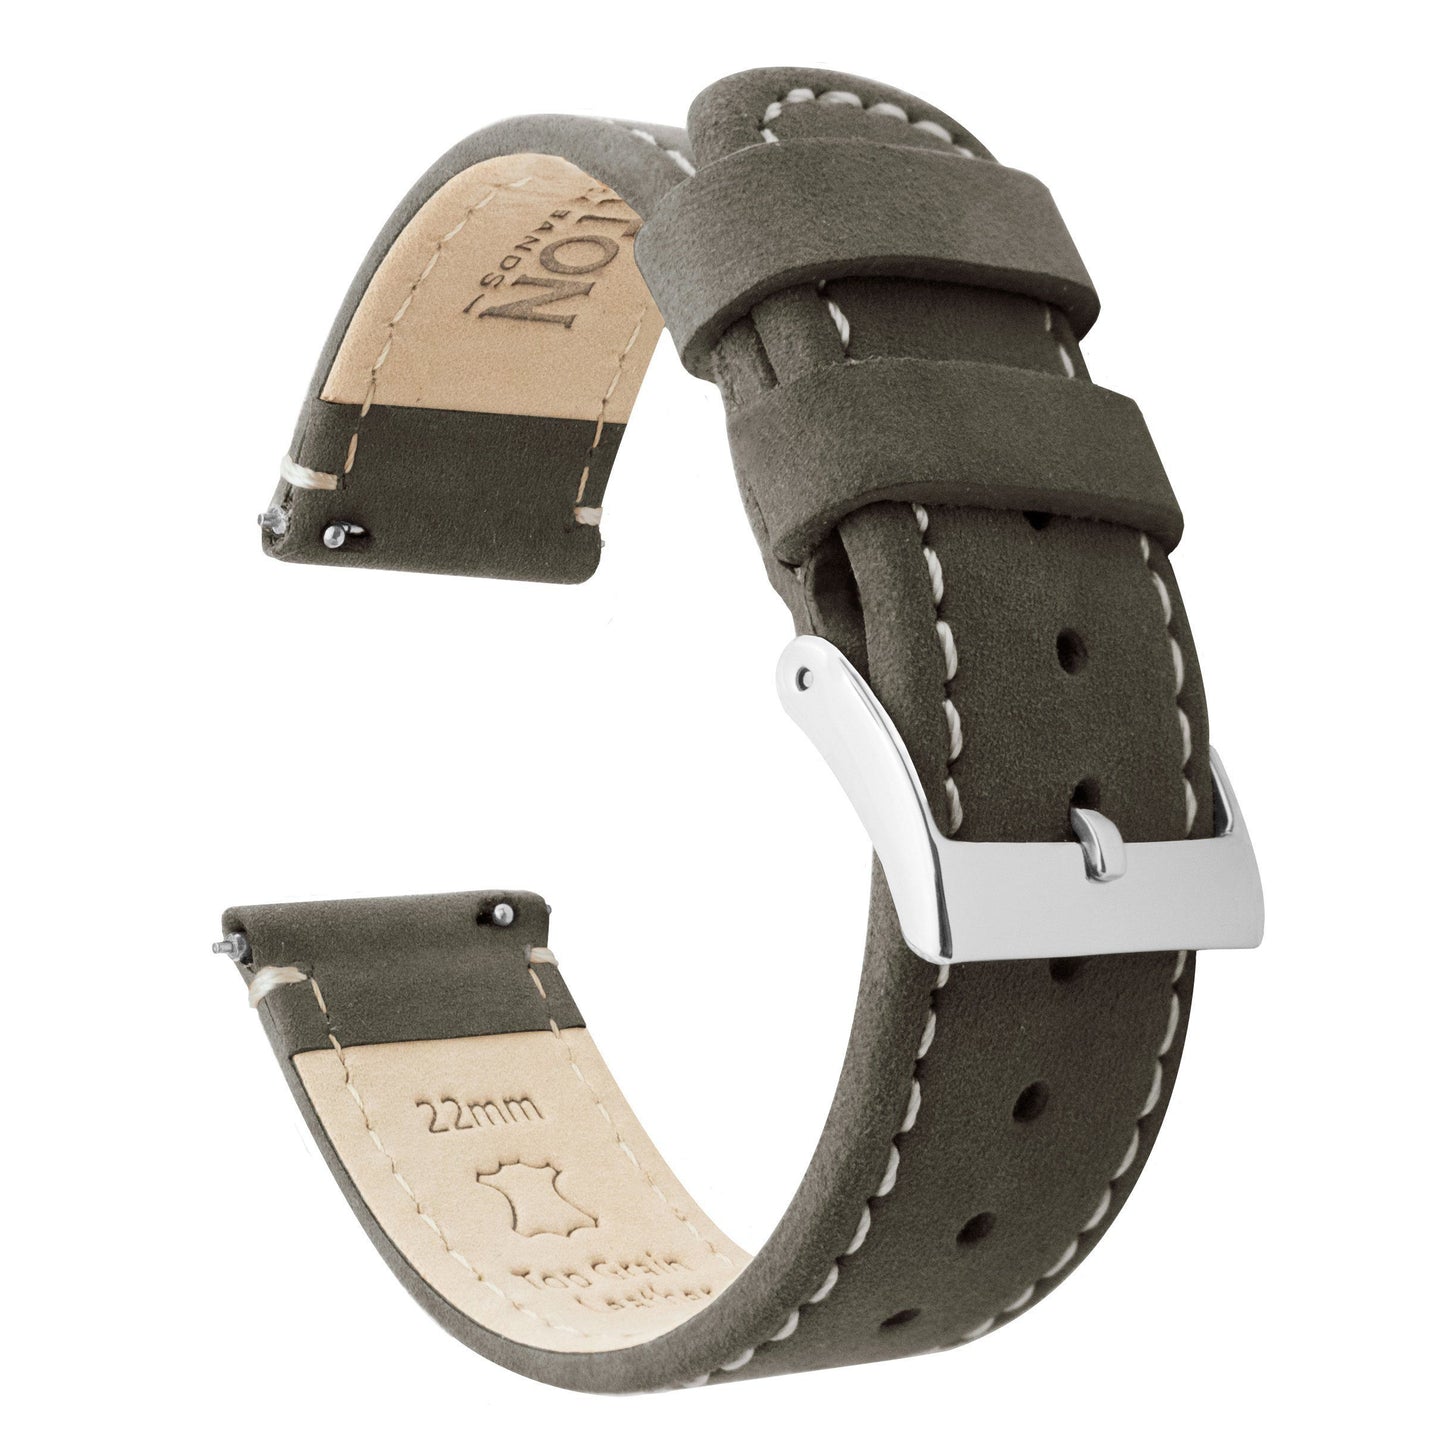 Moto 360 Gen2 | Espresso Brown Leather & Linen White Stitching - Barton Watch Bands